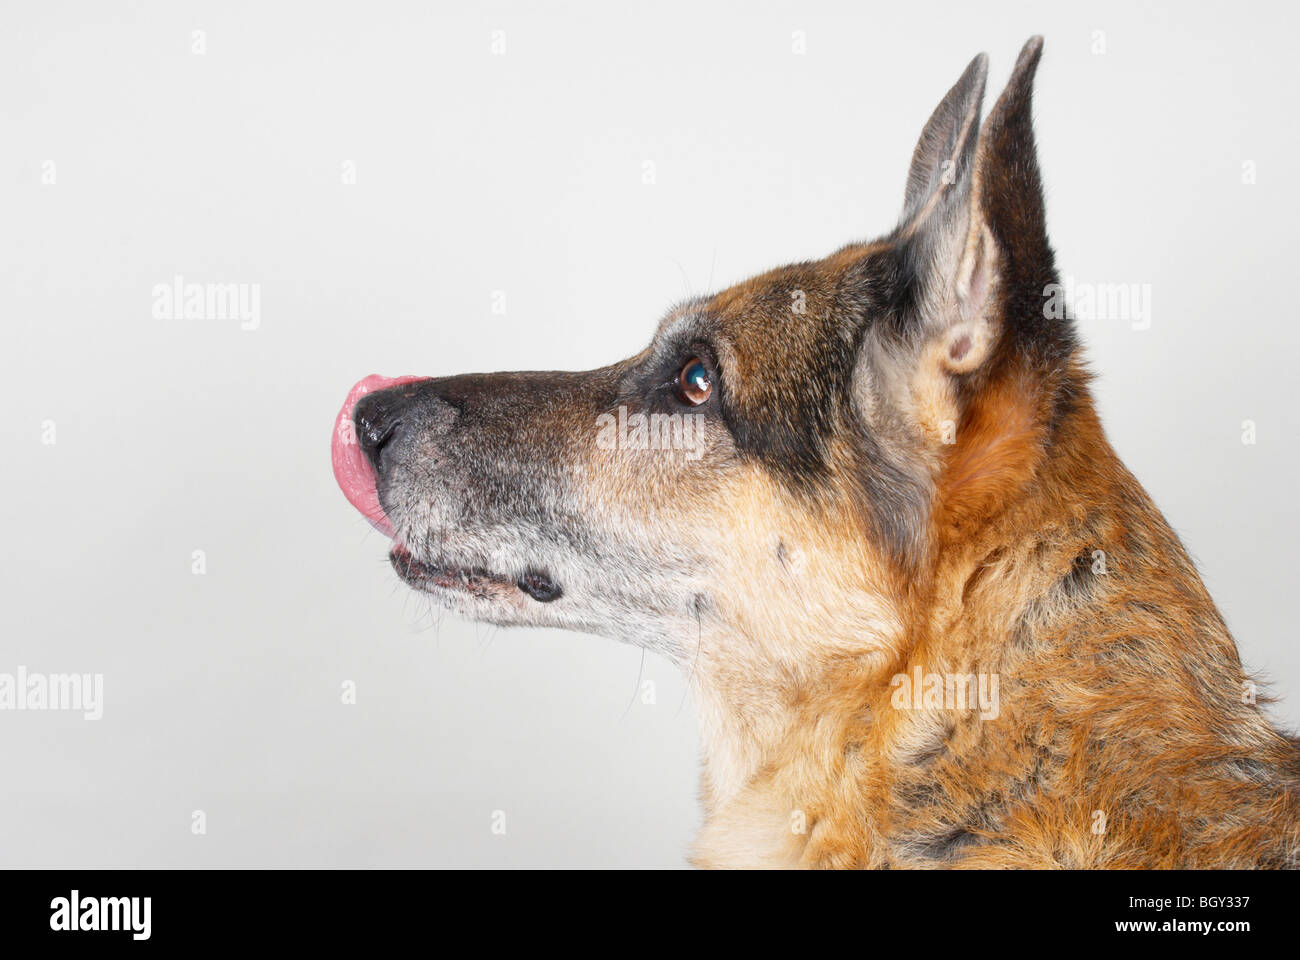 german shepherd dog / Alsatian Stock Photo